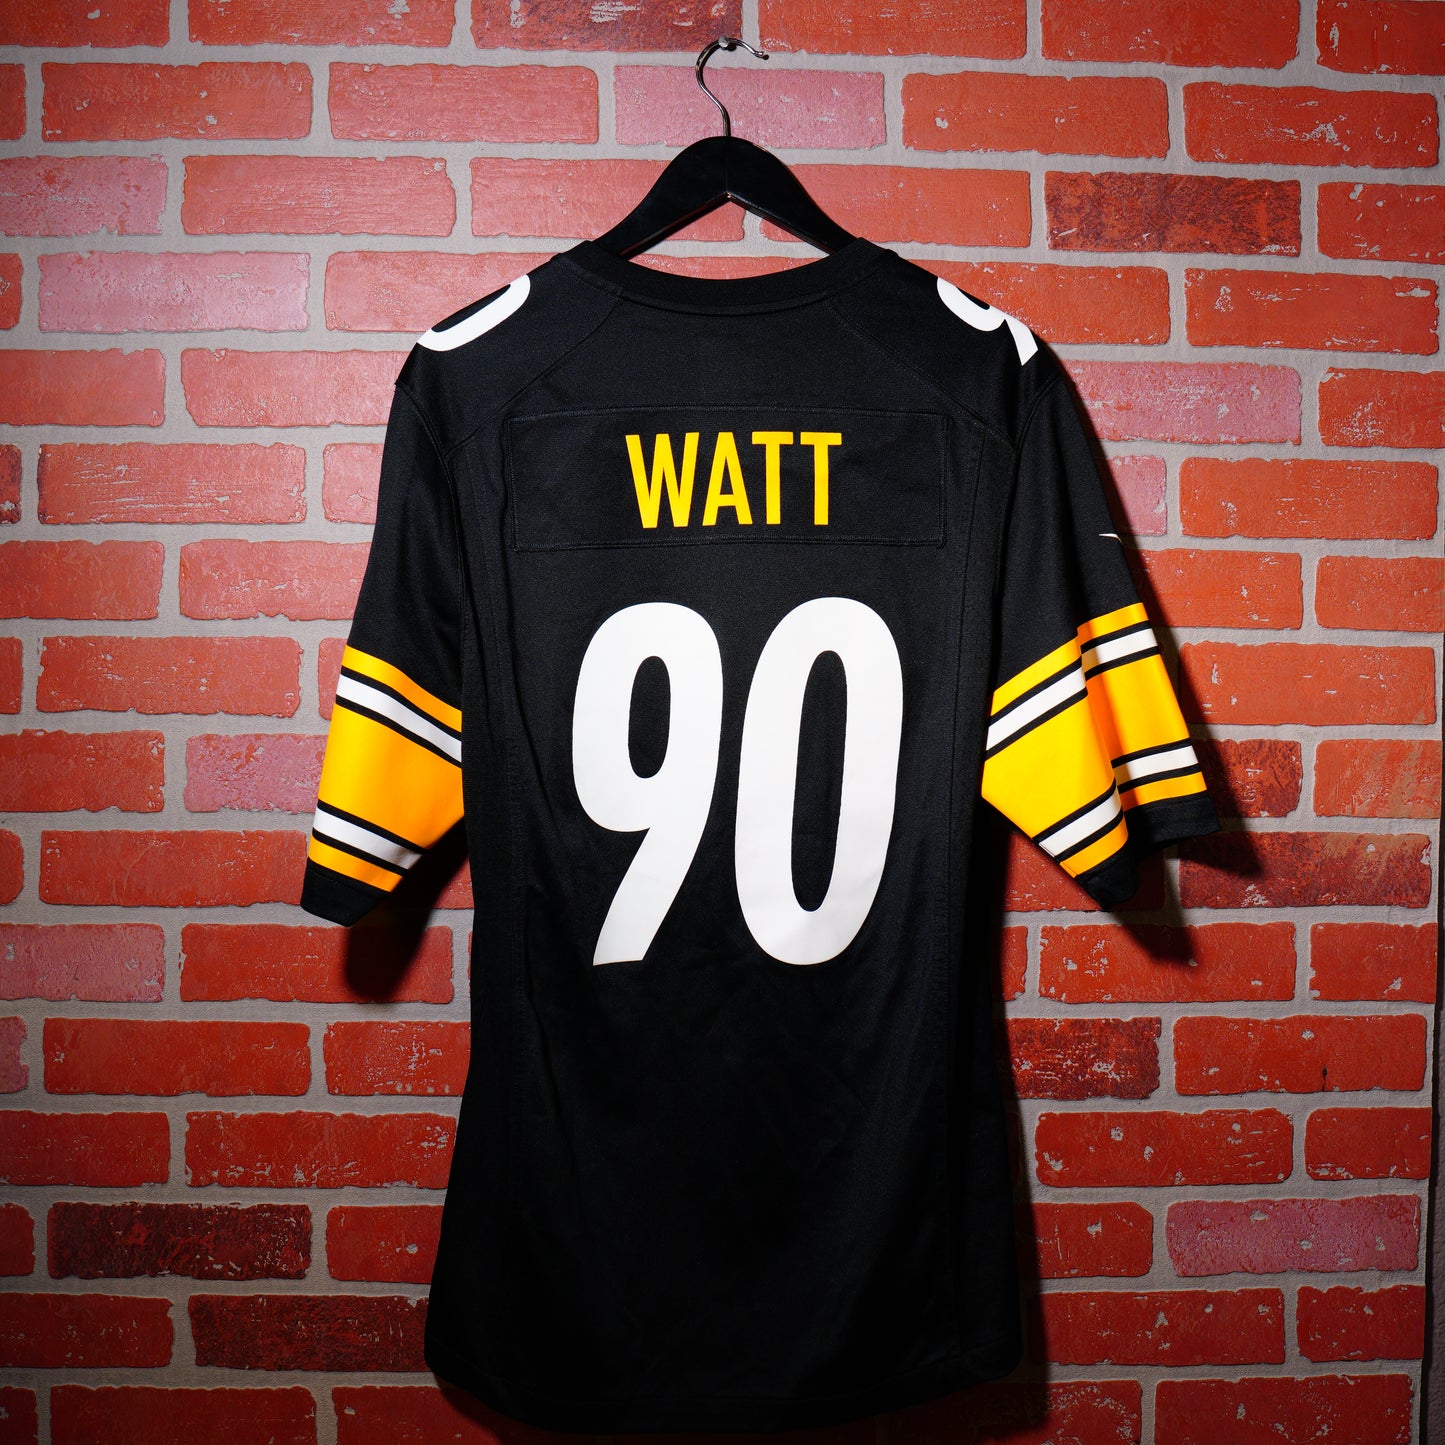 NFL Pittsburg Steelers T.J. Watt Football Jersey